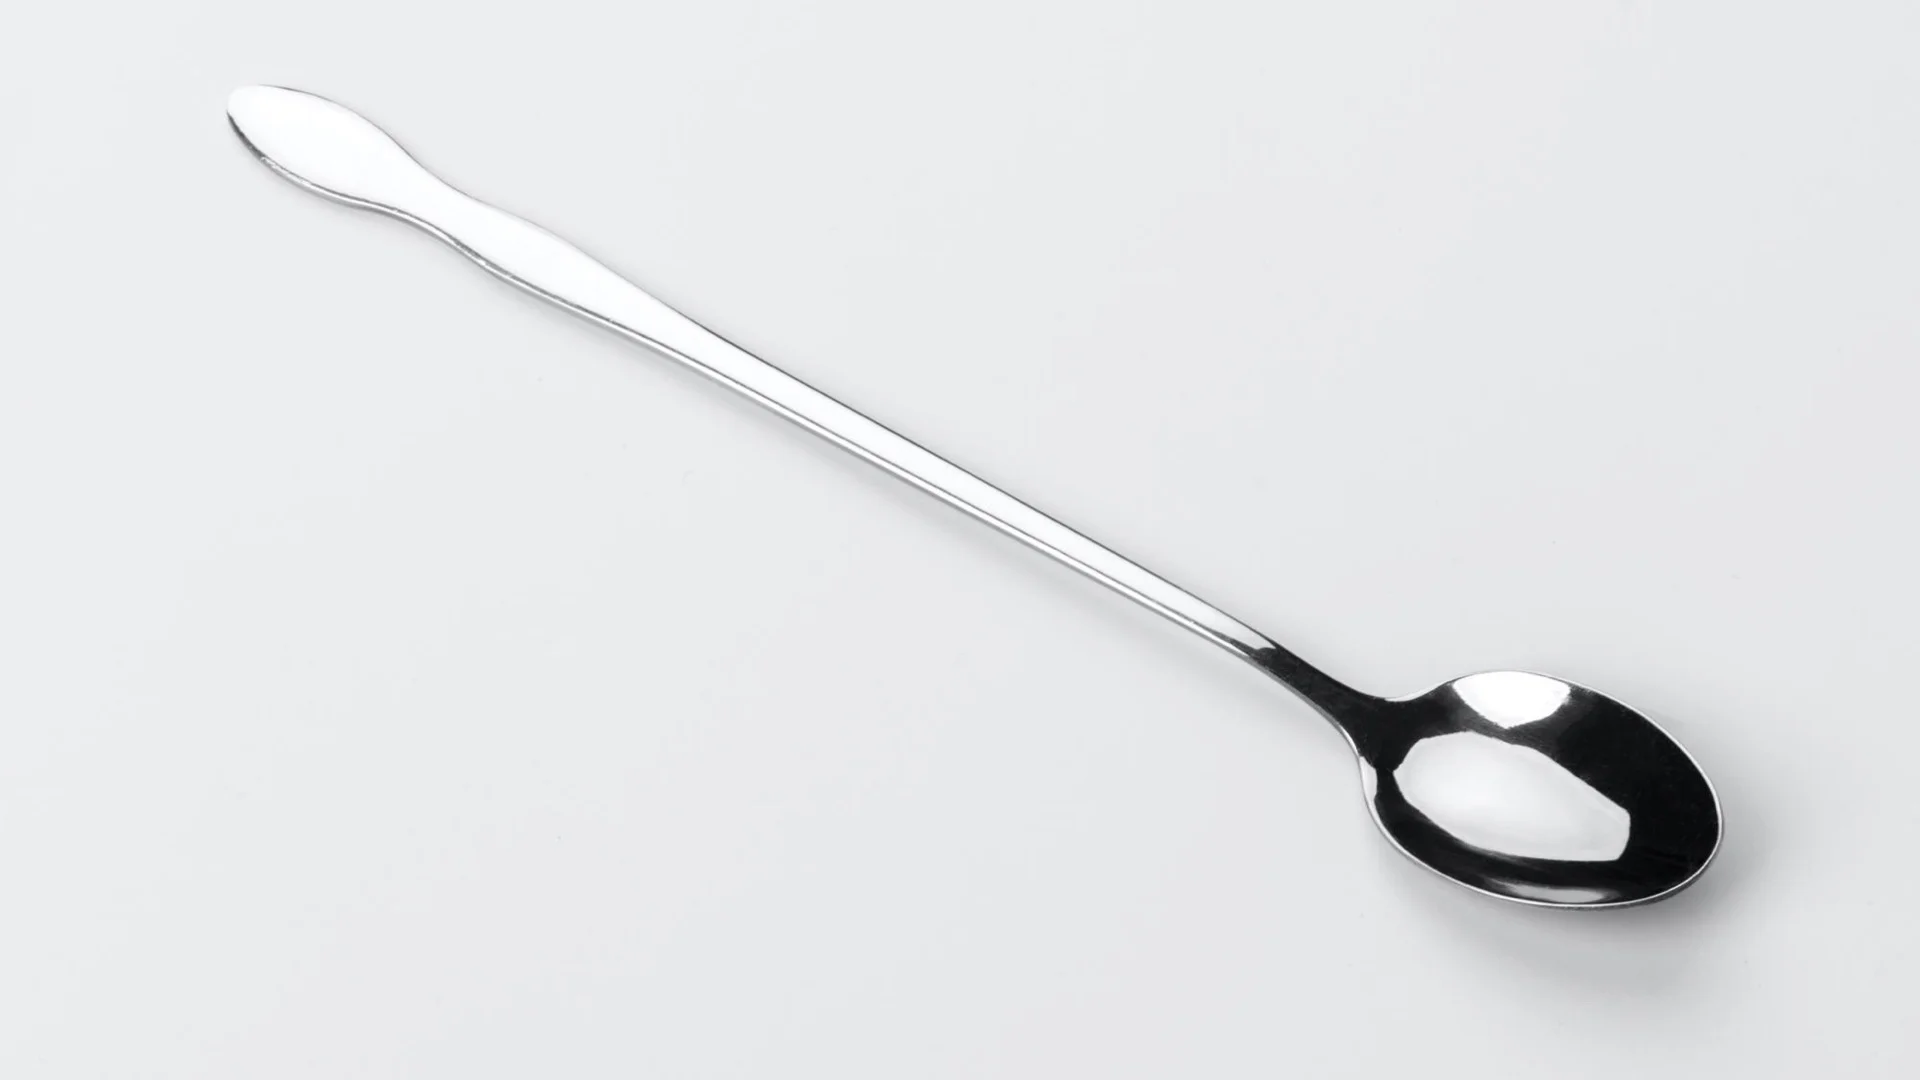 1 teaspoon equals around 4.93 milliliters